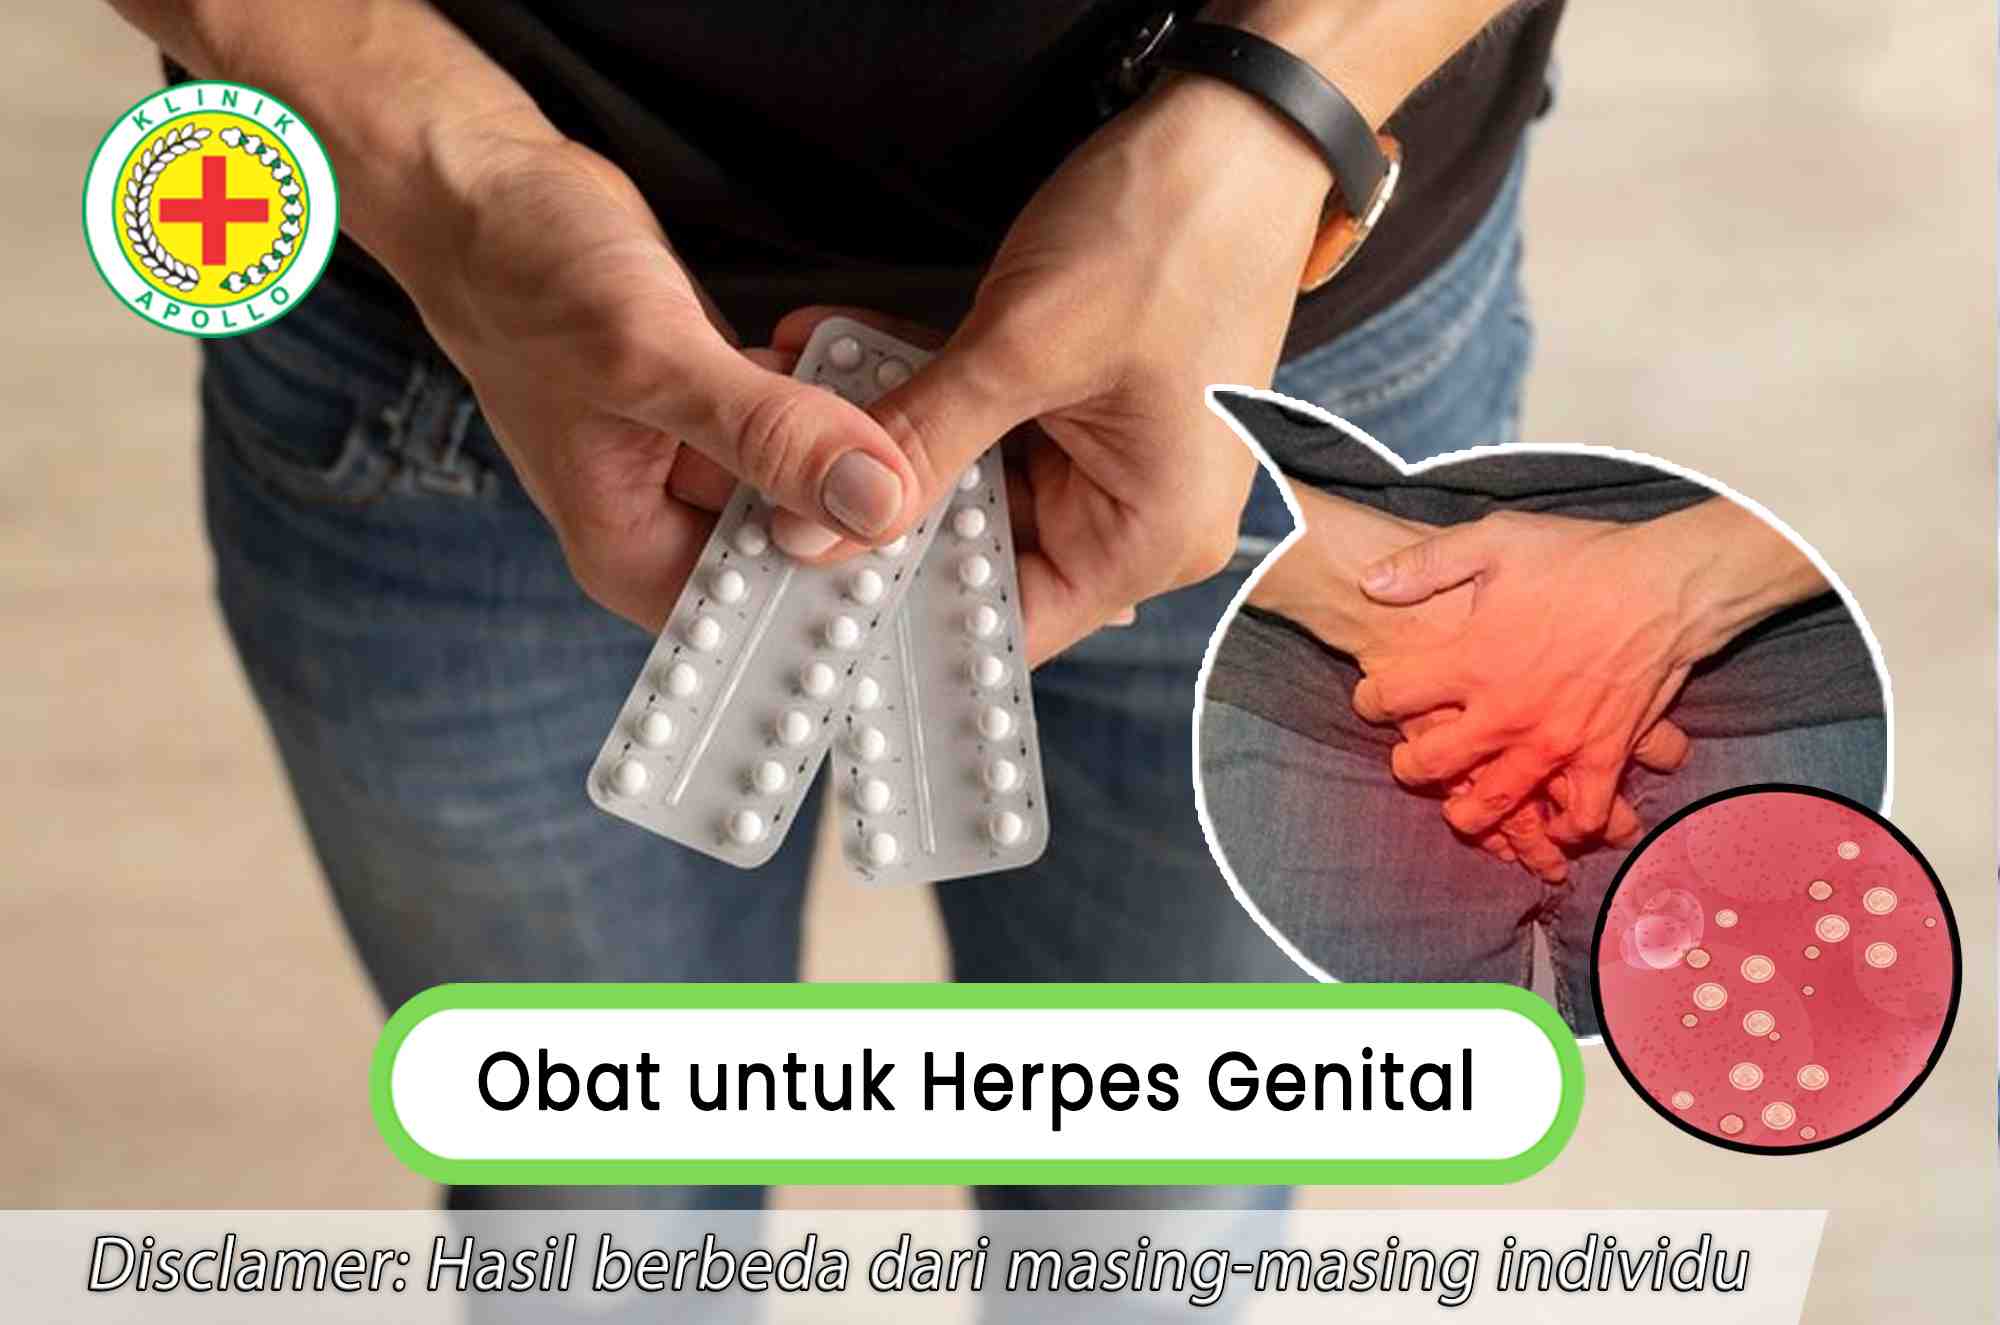 Rekomendasi obat untuk herpes genital yang paling tepat dan terbaik di Klinik Apollo.